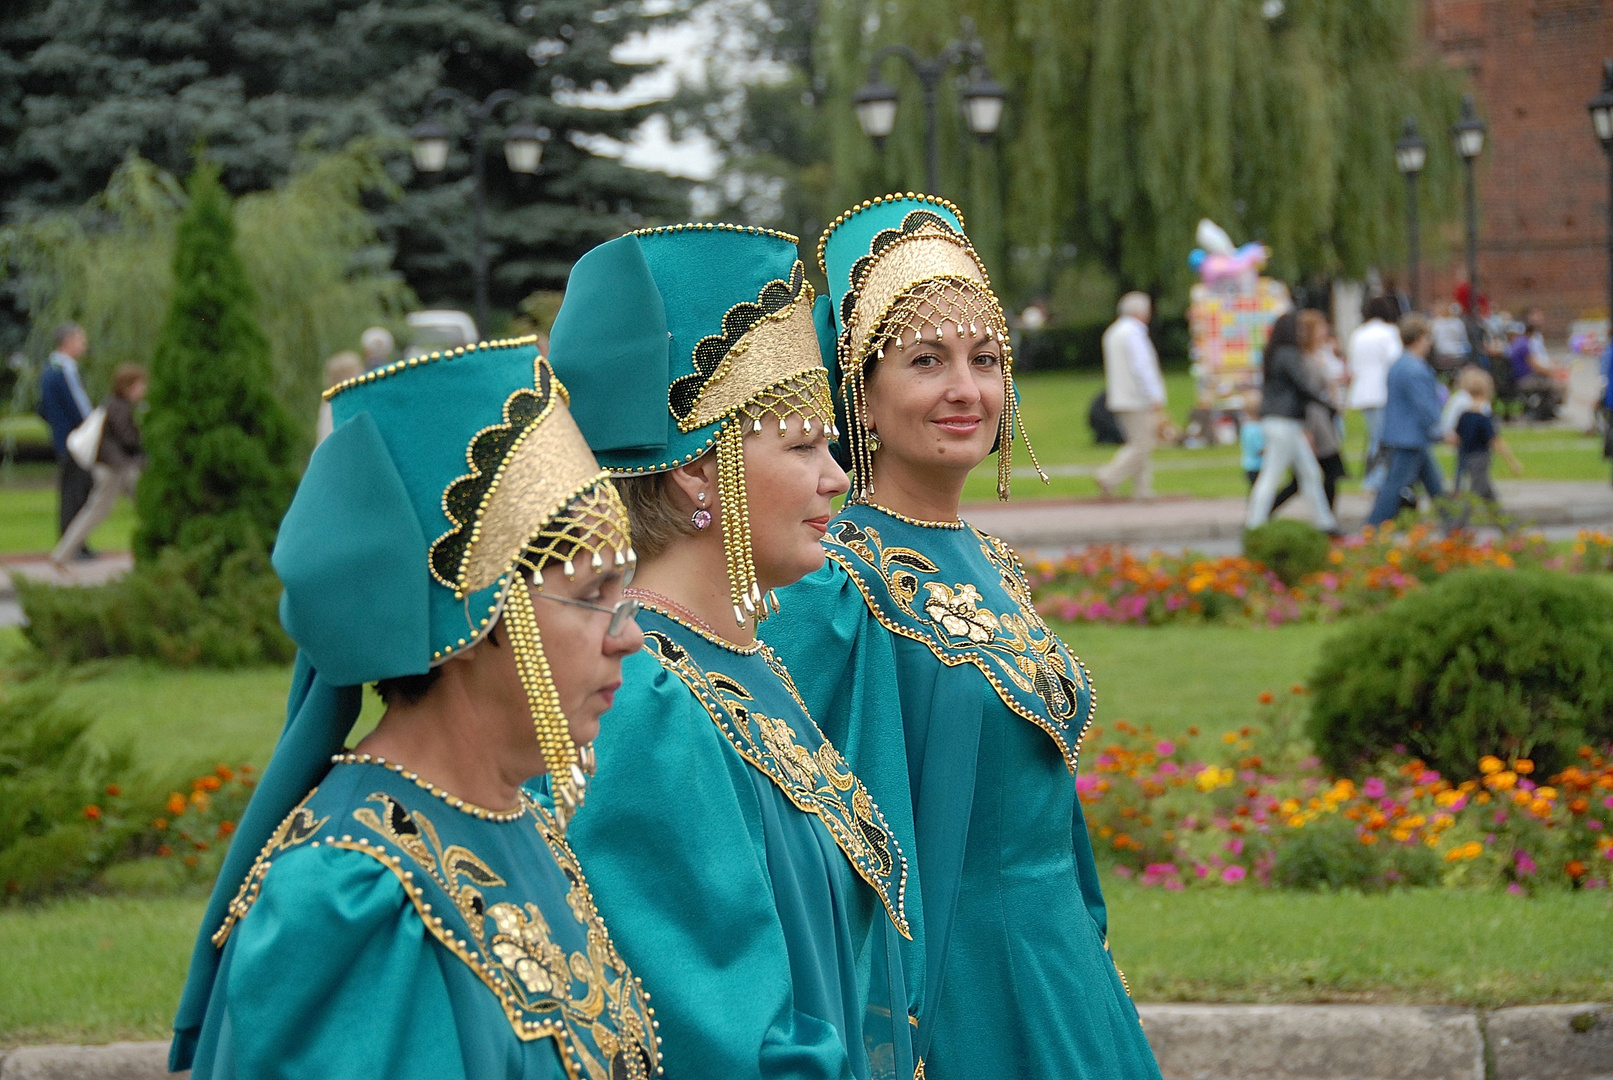 Russische Tracht beim Festumzug 700 Jahre Prawdinsk/Friedland